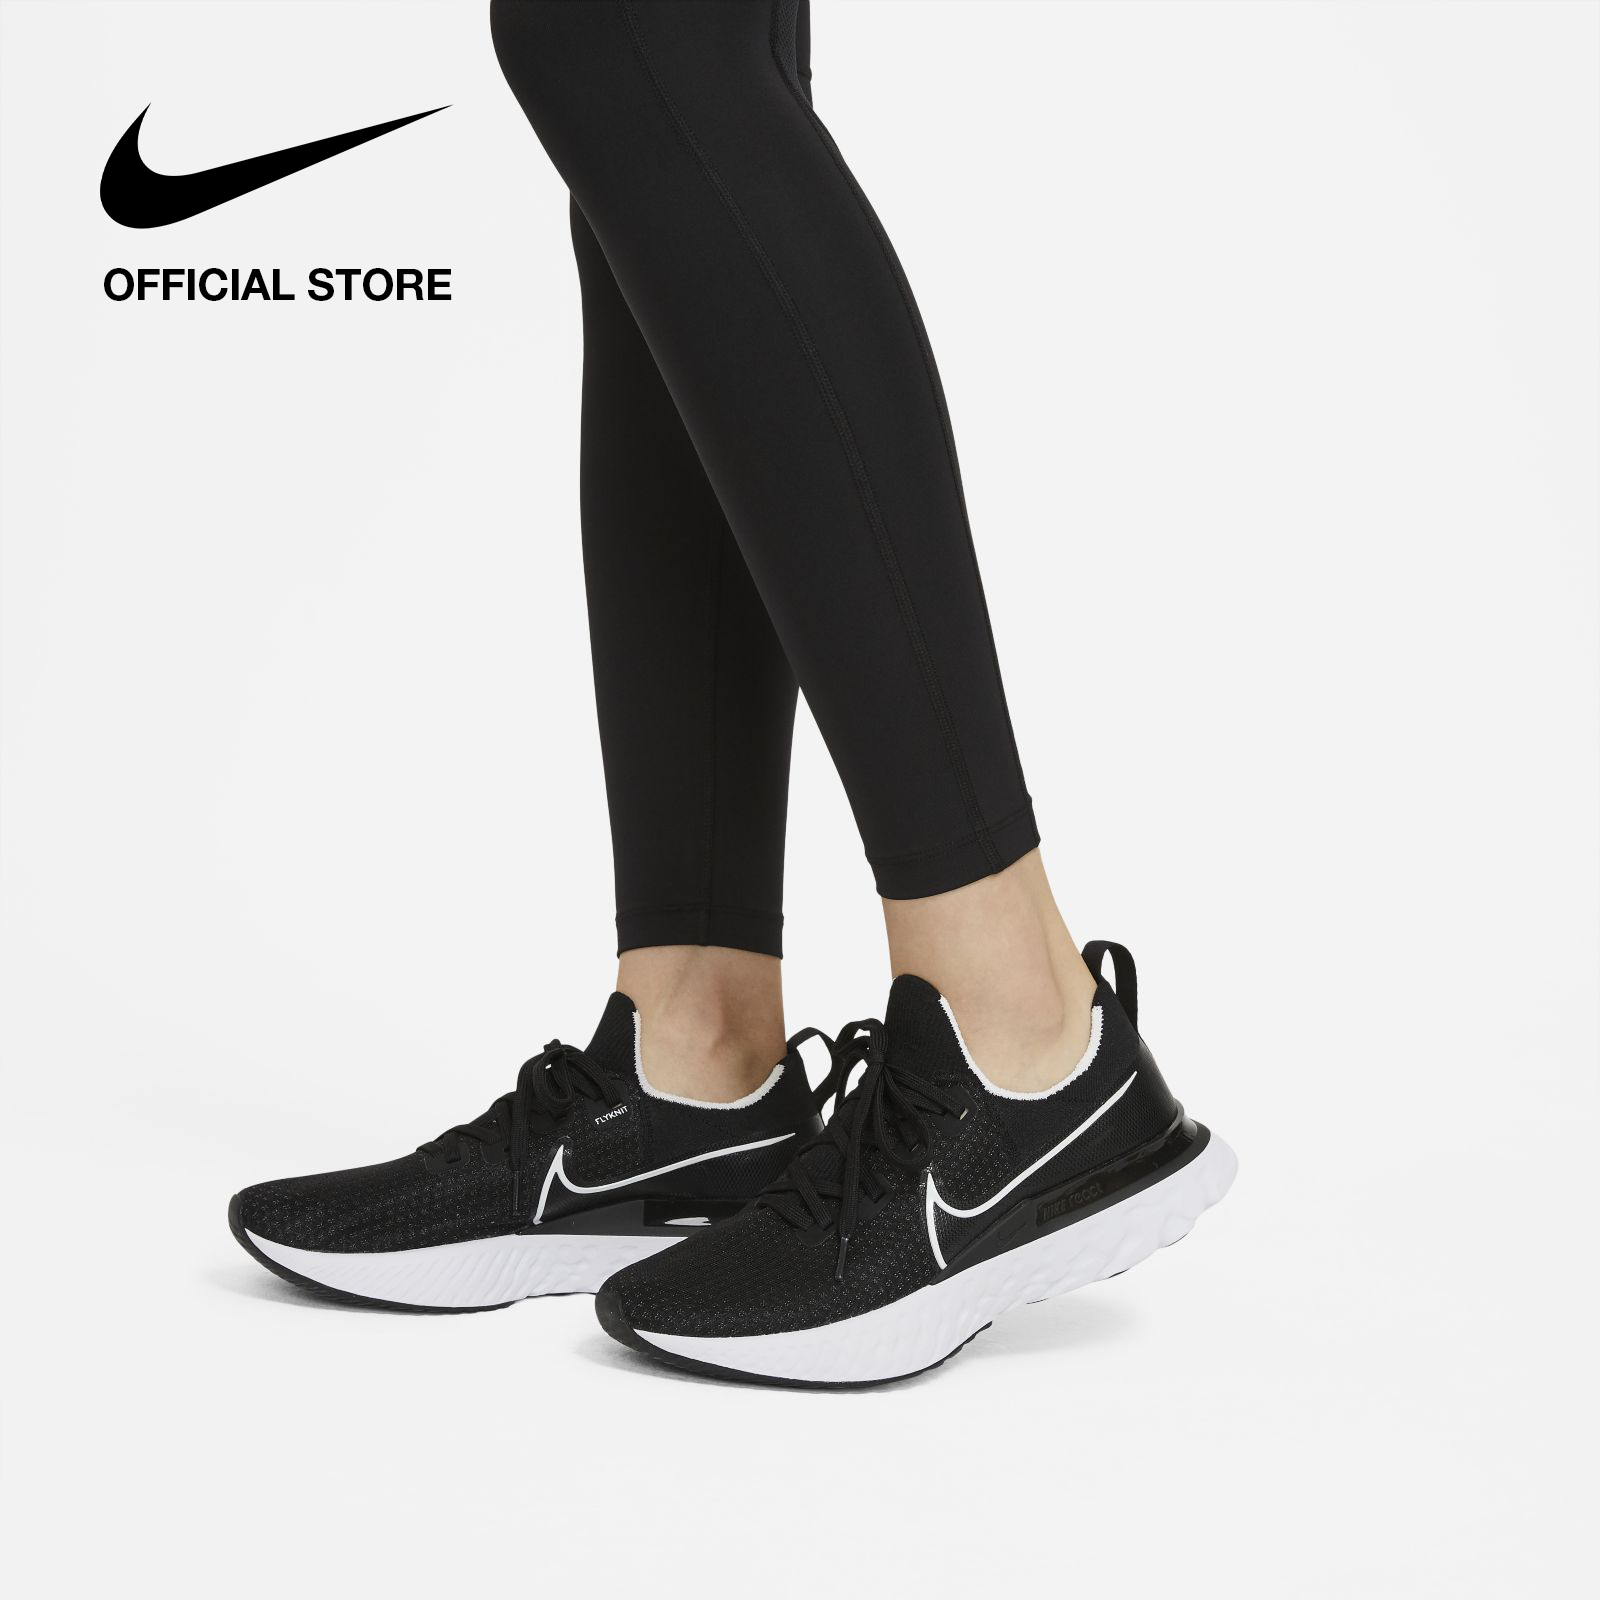 Nike Women's Epic Fast Running Legging - Black ไนกี้ เลกกิ้งวิ่งผู้หญิง อีพิค ฟาสต์ - สีดำ